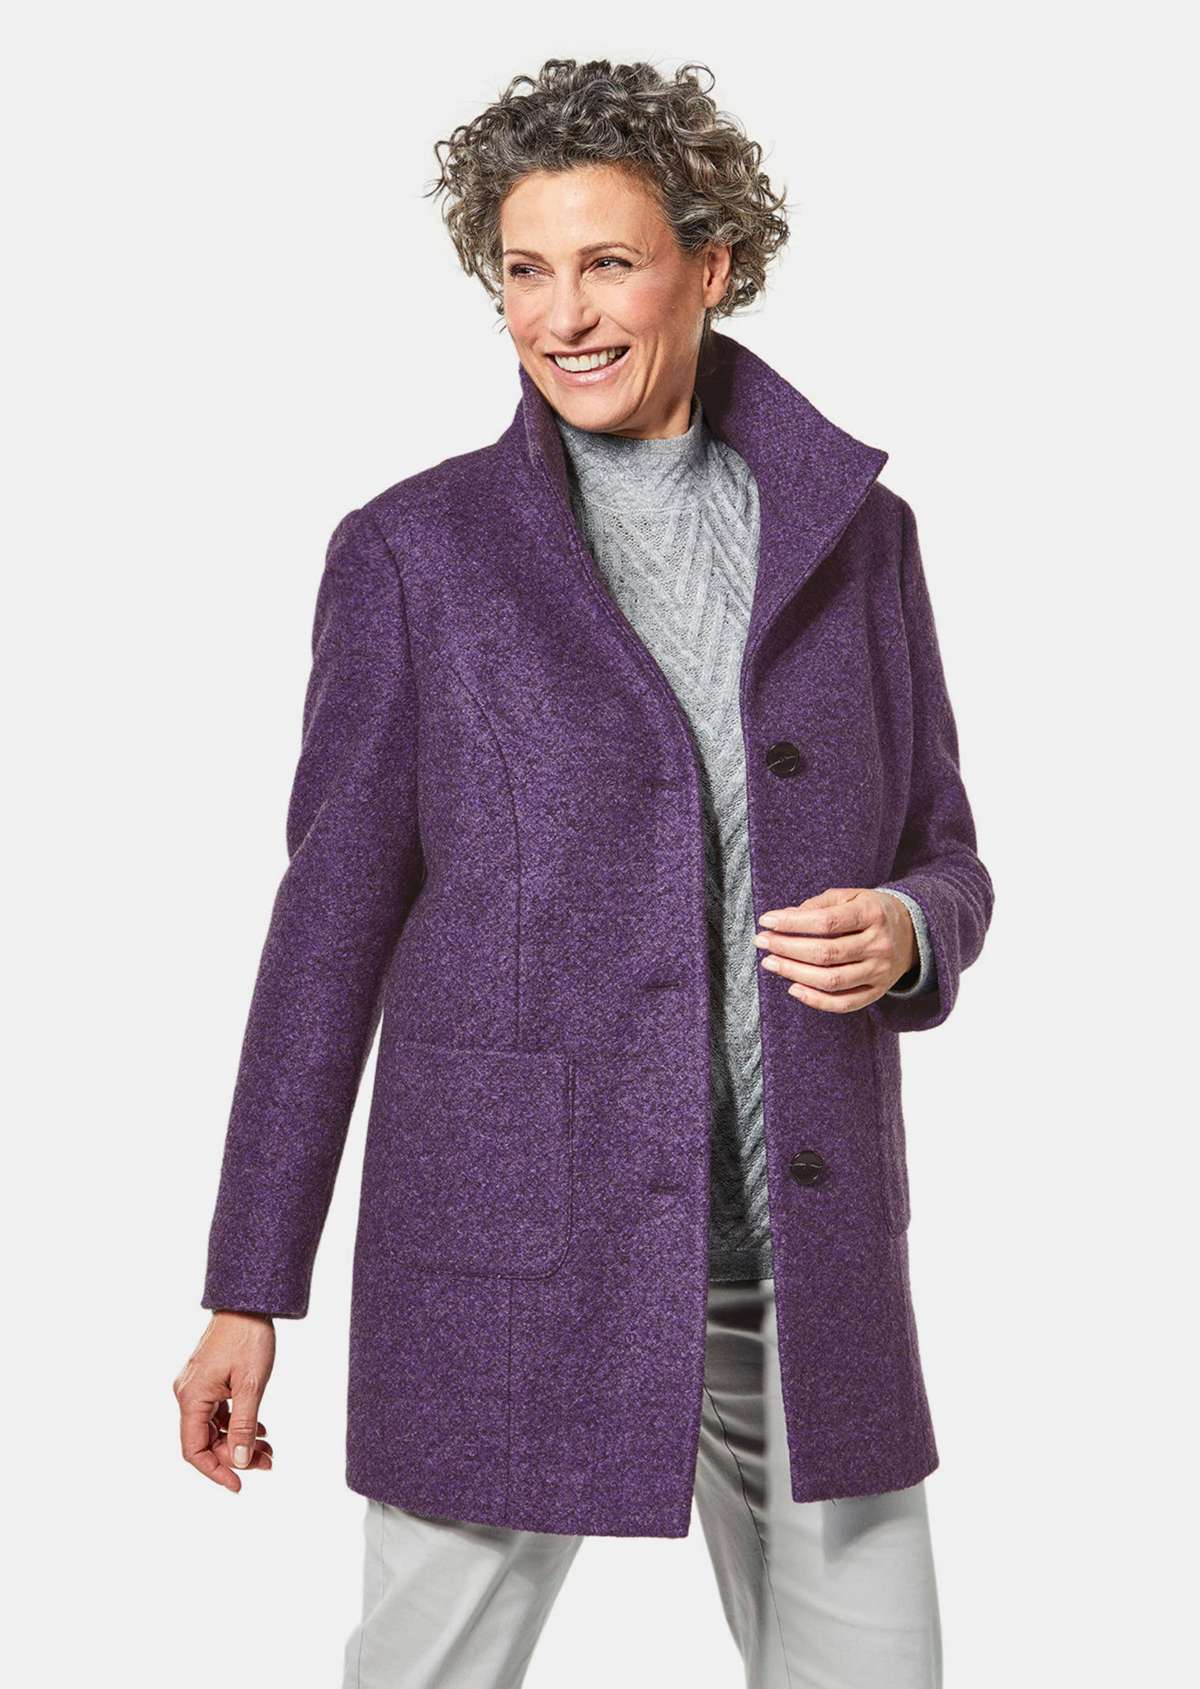 Пышное шерстяное пальто в современном стиле.